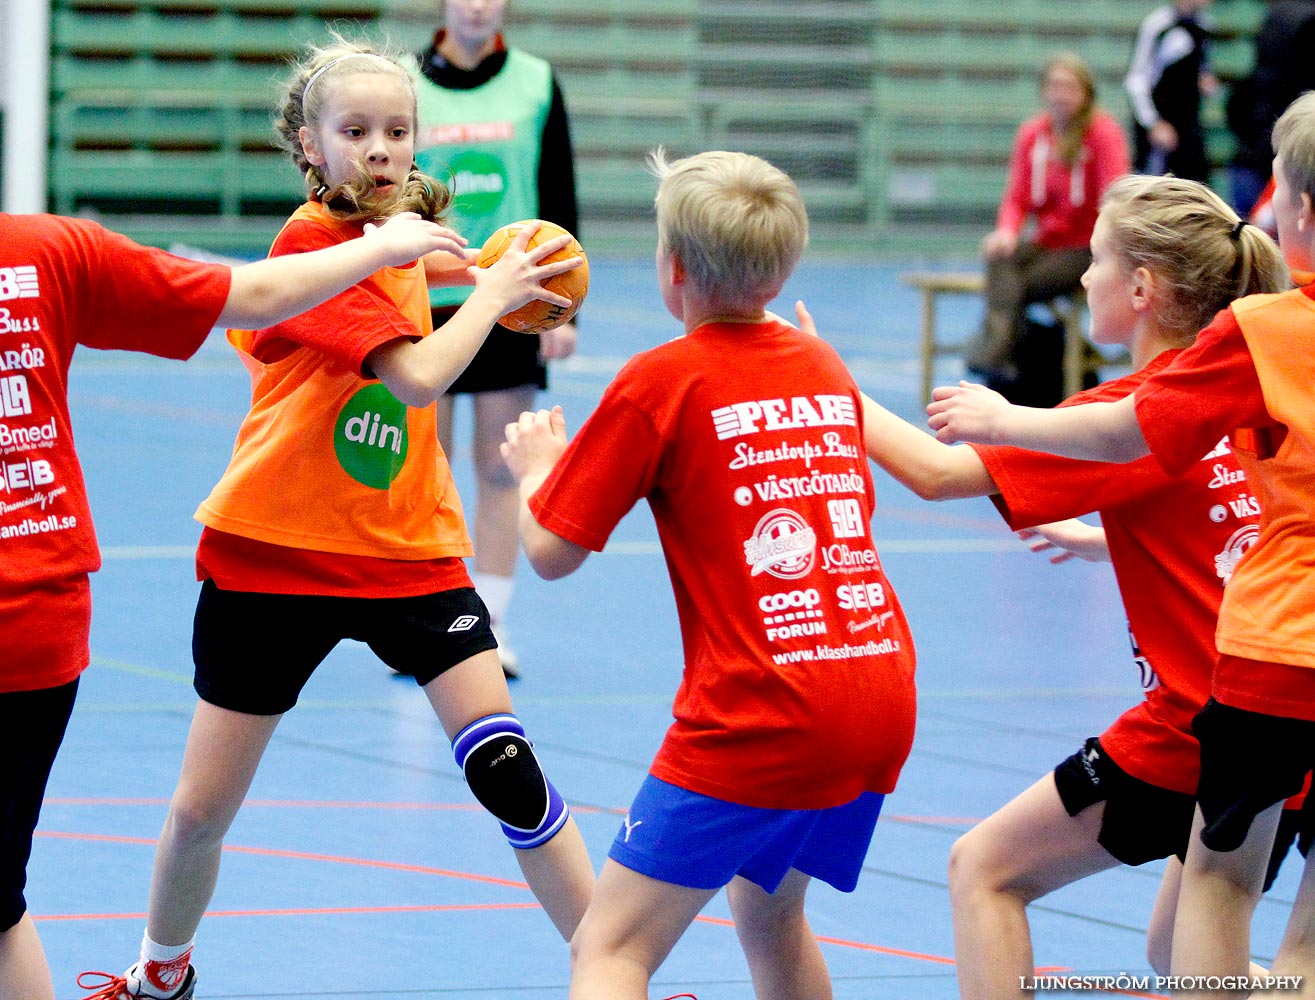 Klasshandboll Skövde 2013 Åldersklass 2001,mix,Arena Skövde,Skövde,Sverige,Handboll,,2013,63028